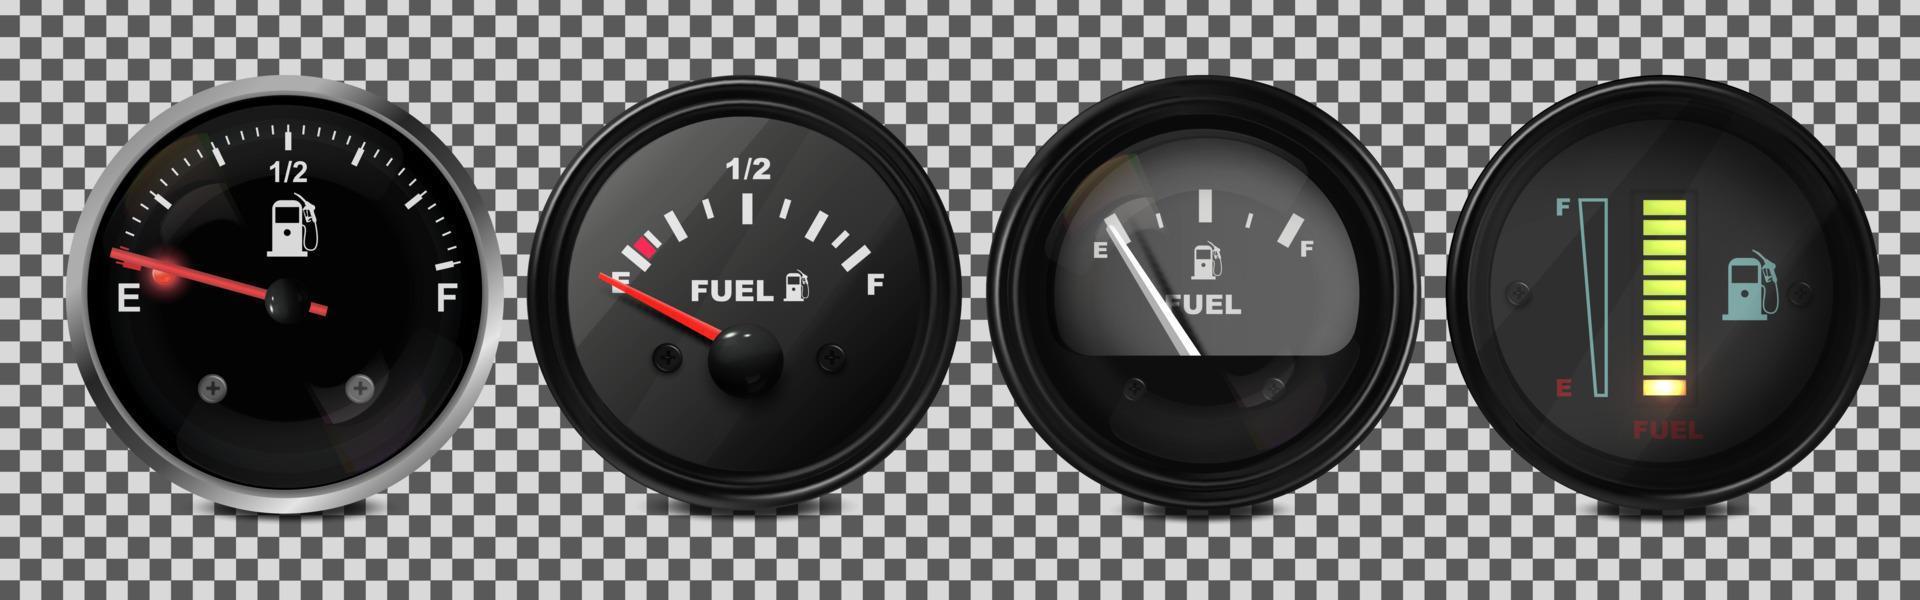 vektor realistisk, 3d uppsättning av bränsle nivå indikatorer i en bil. illustration på en transparent bakgrund.